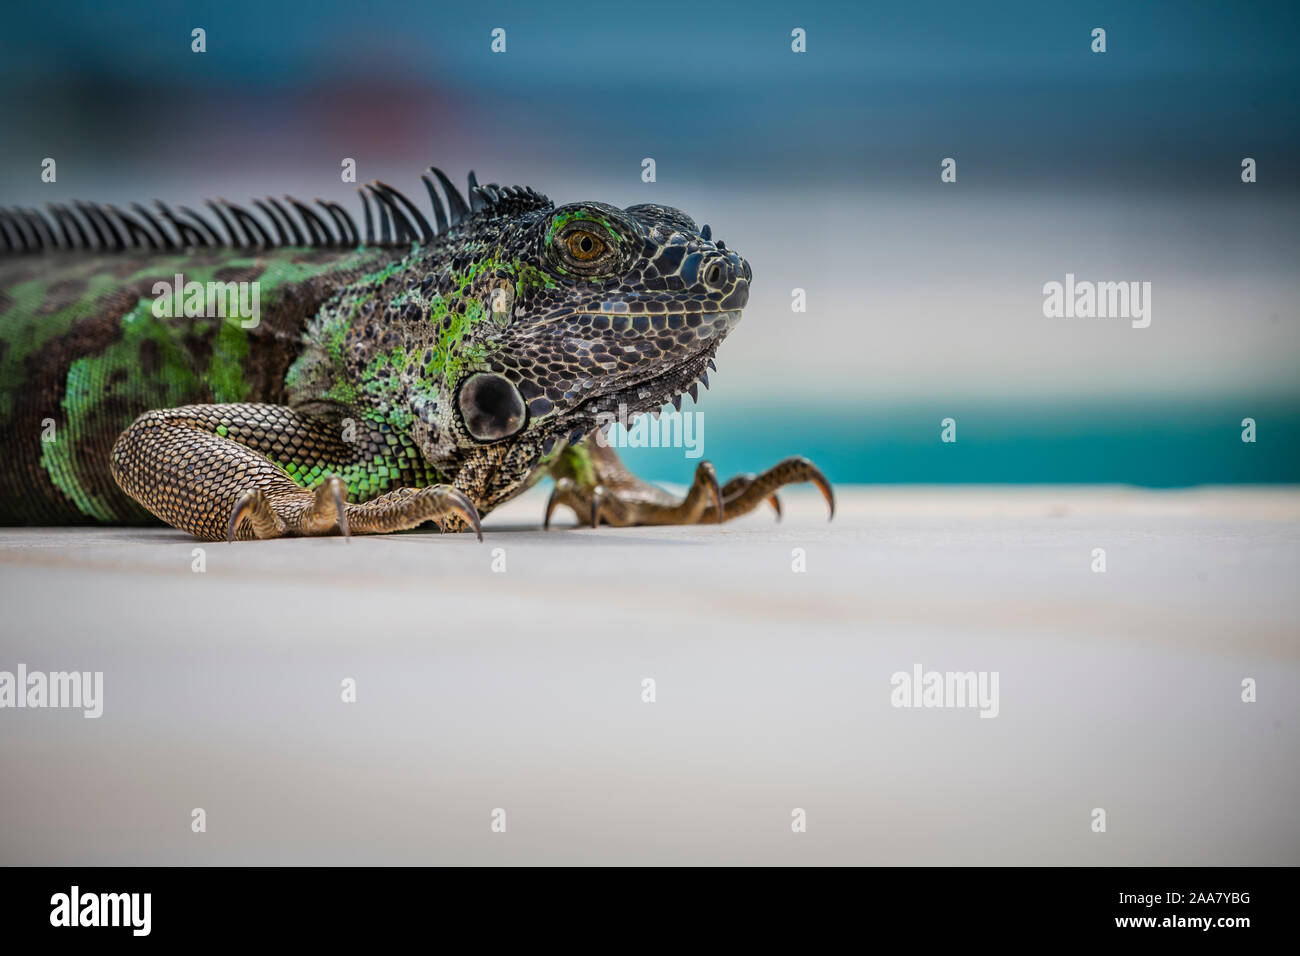 Nahaufnahme eines grünen Leguans (geringe Schärfentiefe) Stockfoto